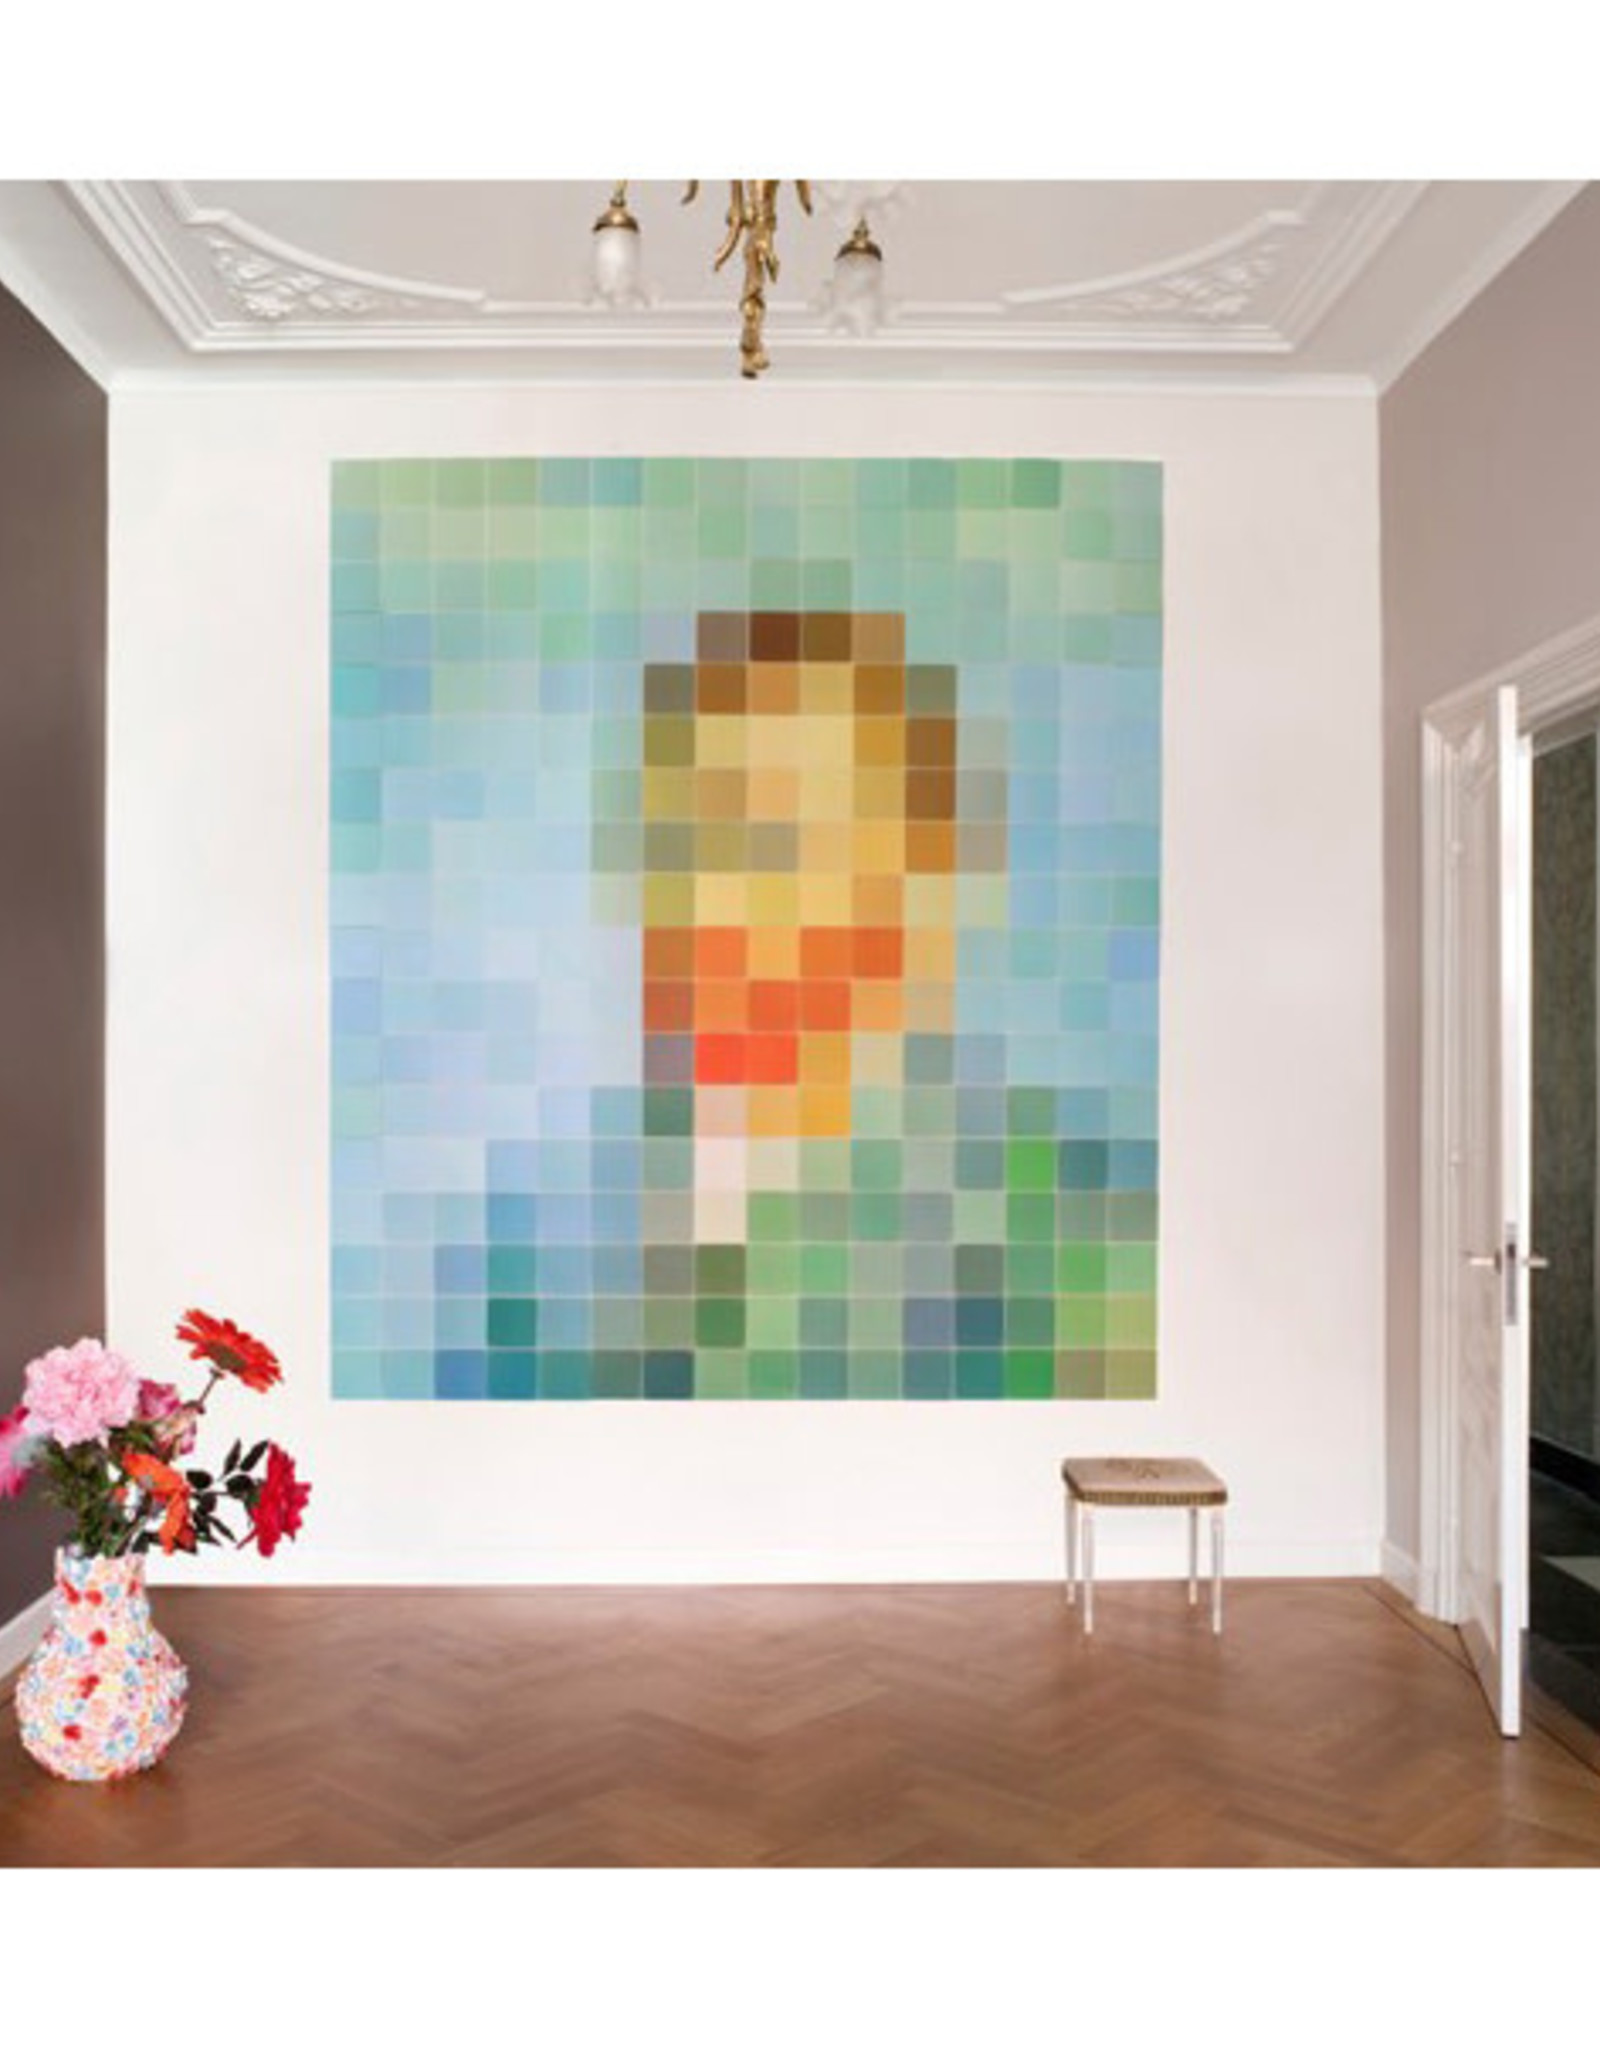 IXXI Pixelated Van Gogh - 160cm x 180cm